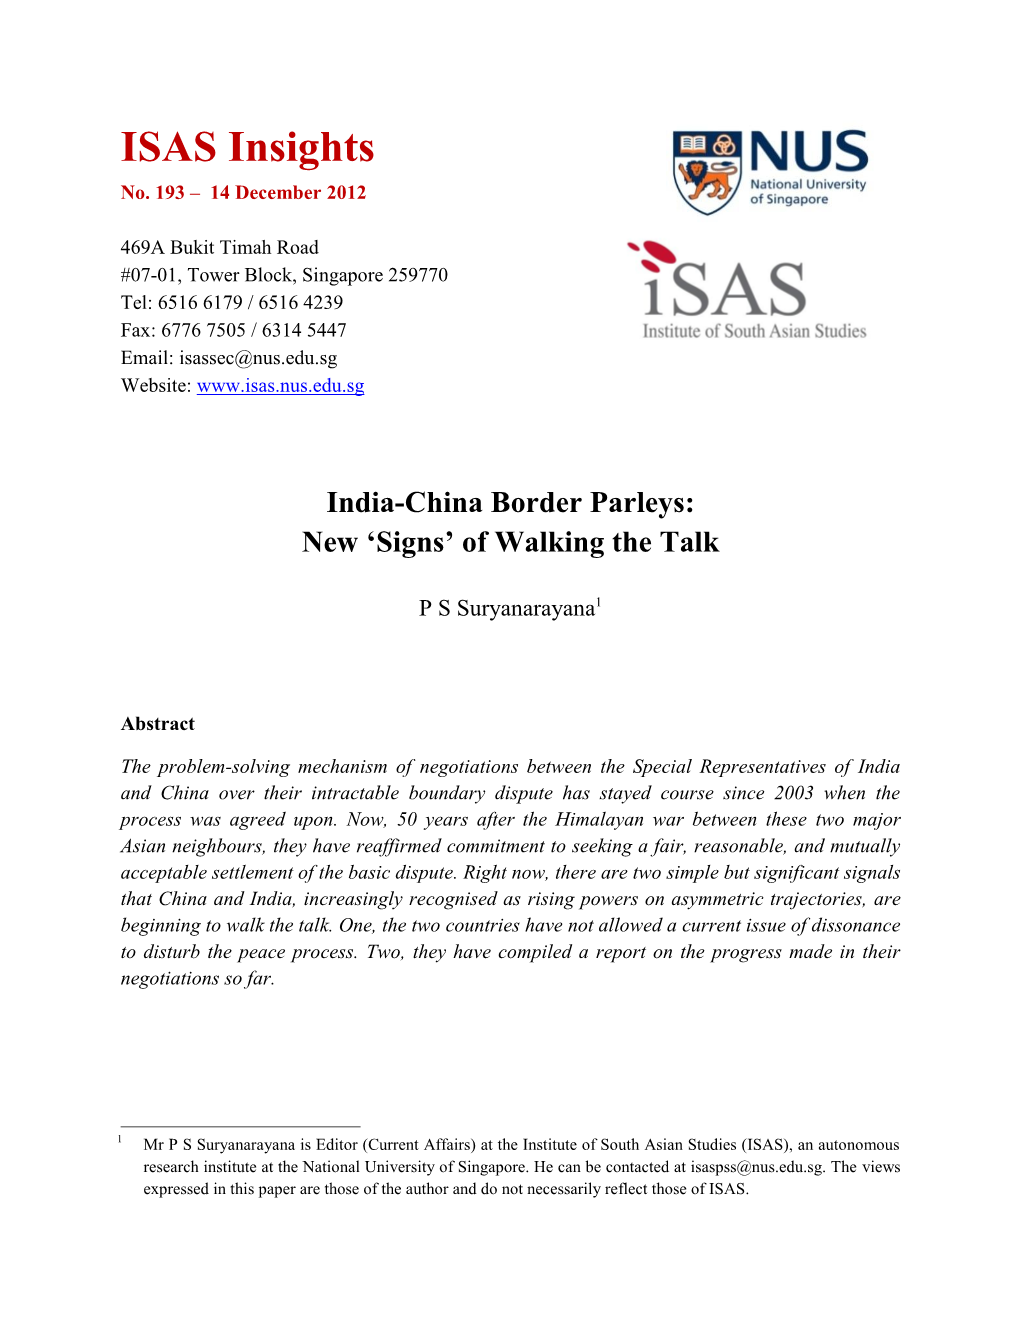 India-China Border Parleys: New ‘Signs’ of Walking the Talk